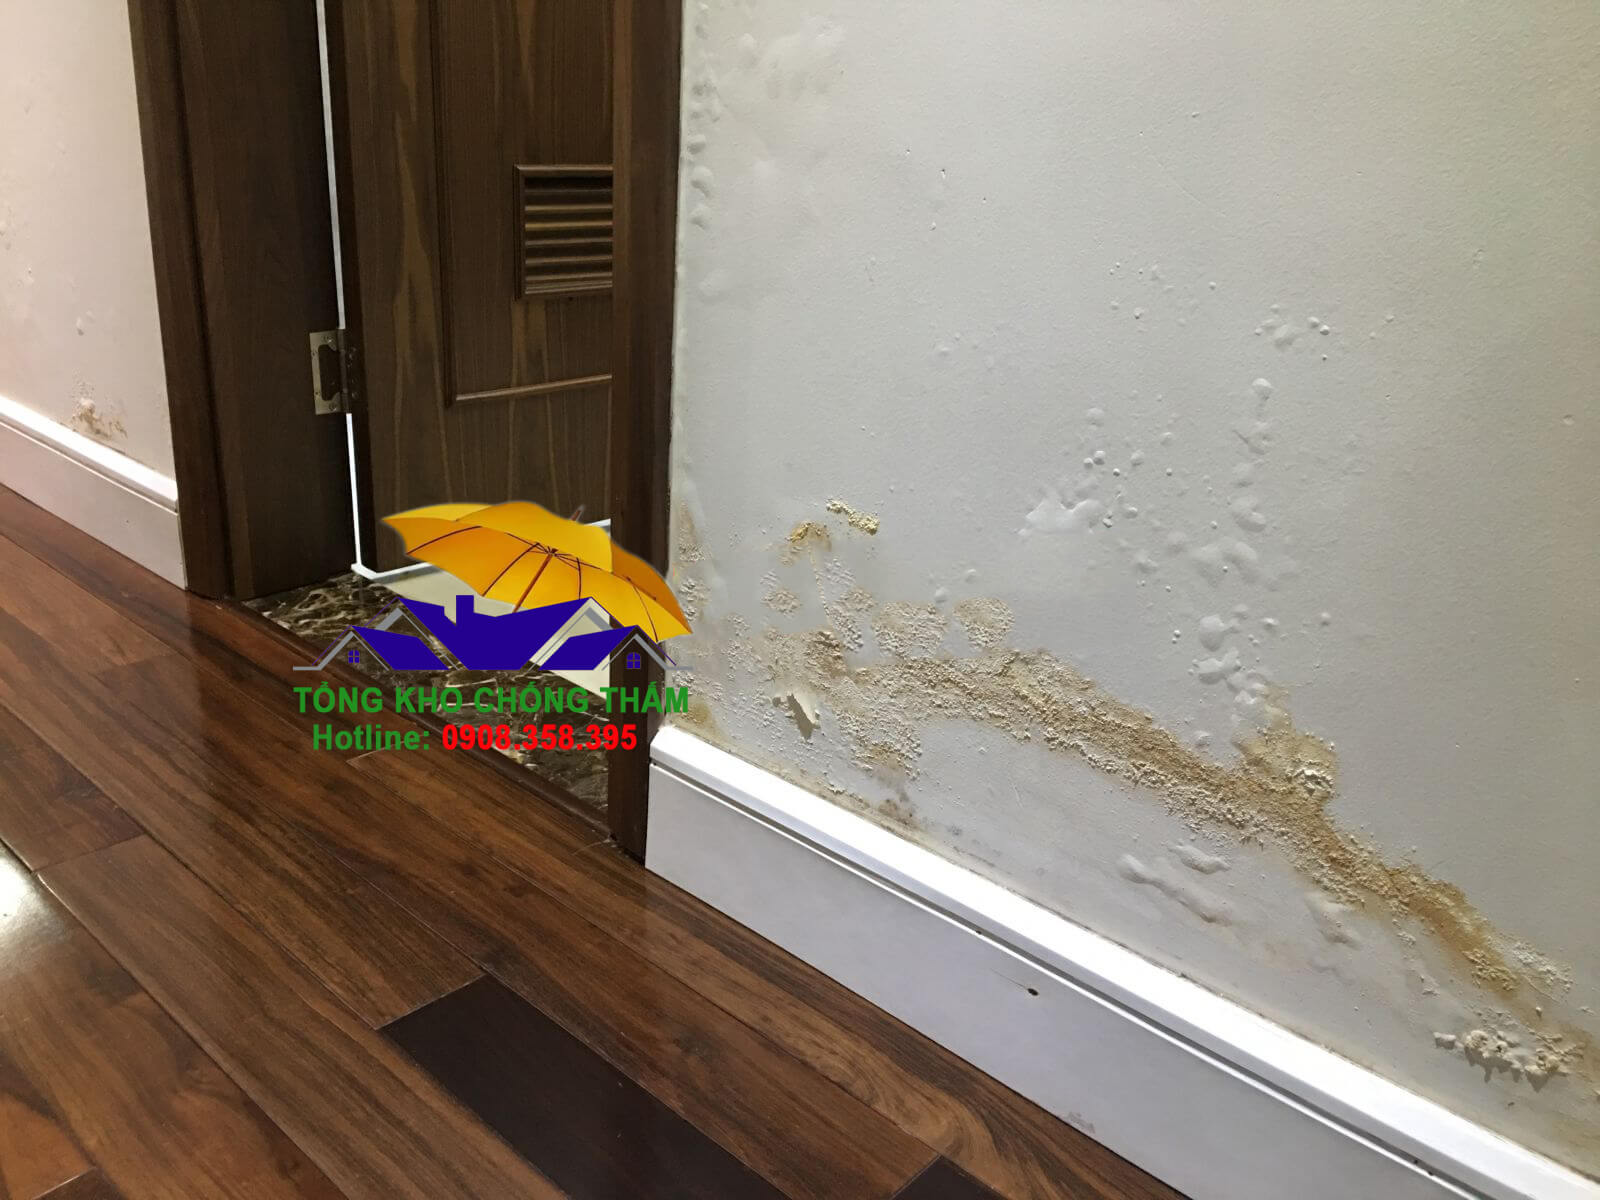 Chân tường giáp khu vệ sinh căn hộ chung cư bị thấm, ẩm mốc và bong tróc sơn